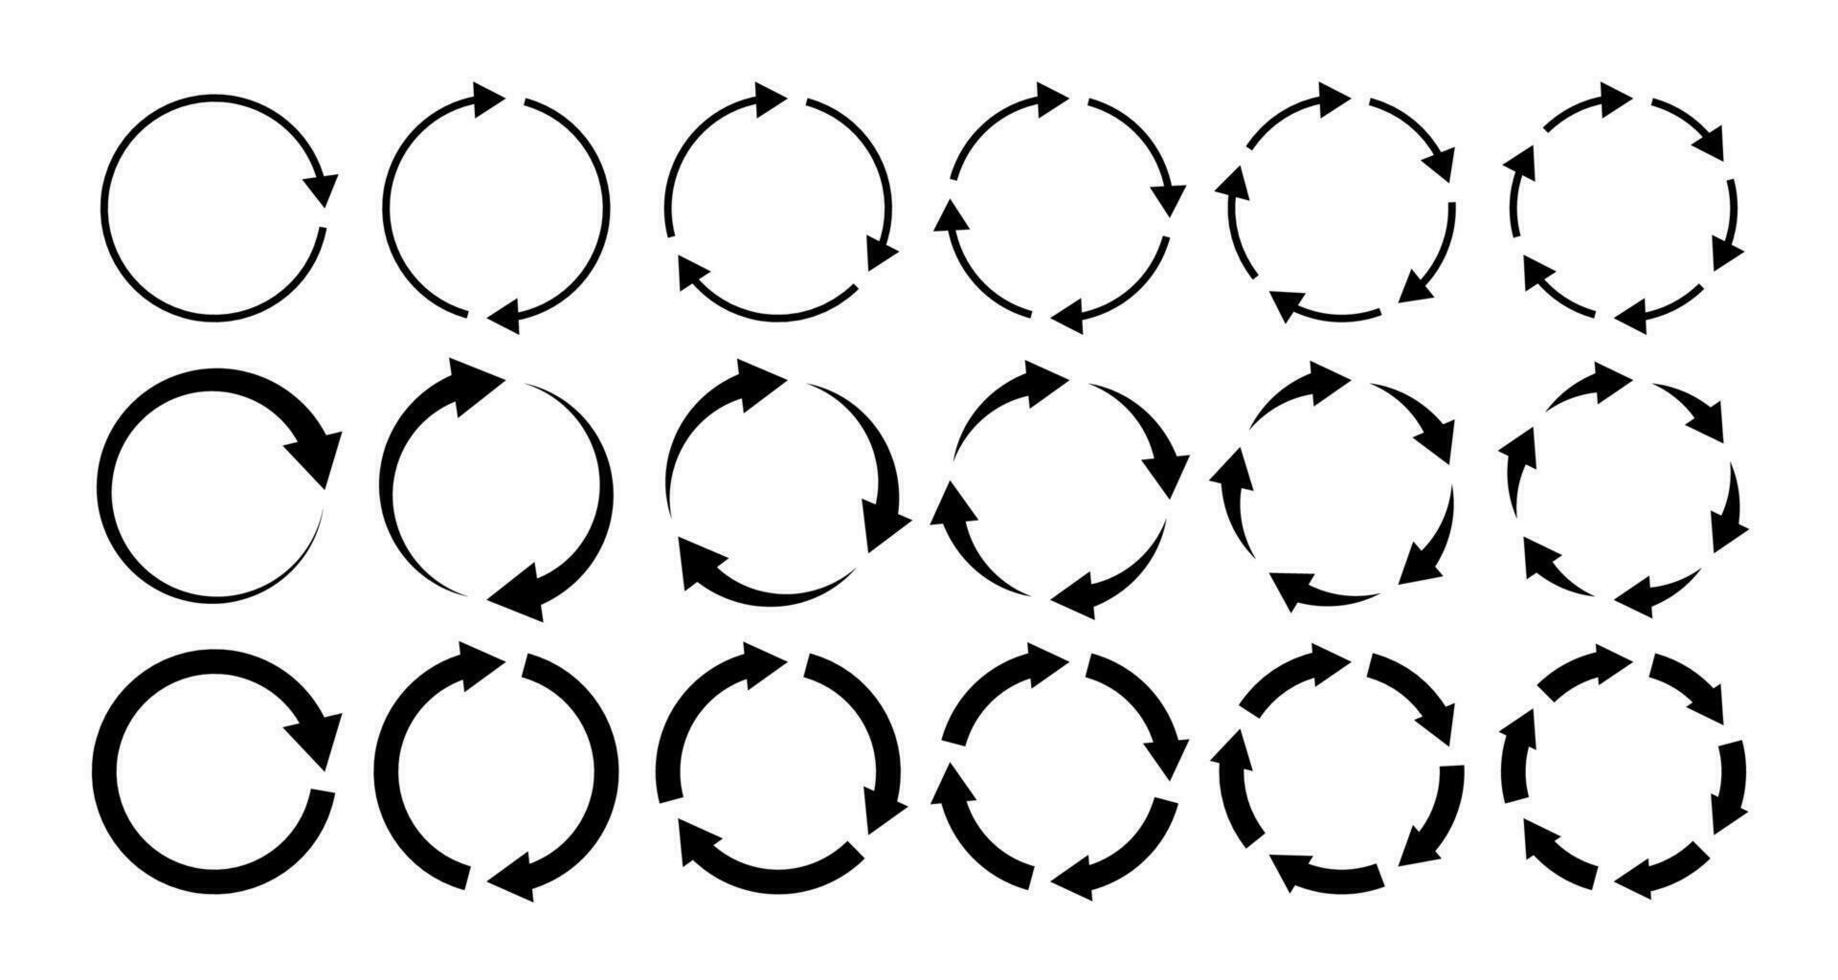 circulo flechas circular proceso, girar infografía elemento. redondo paso bucle, sincronizar cargando flecha símbolo. rotación opción editable carrera vector reciclar actualizar señales